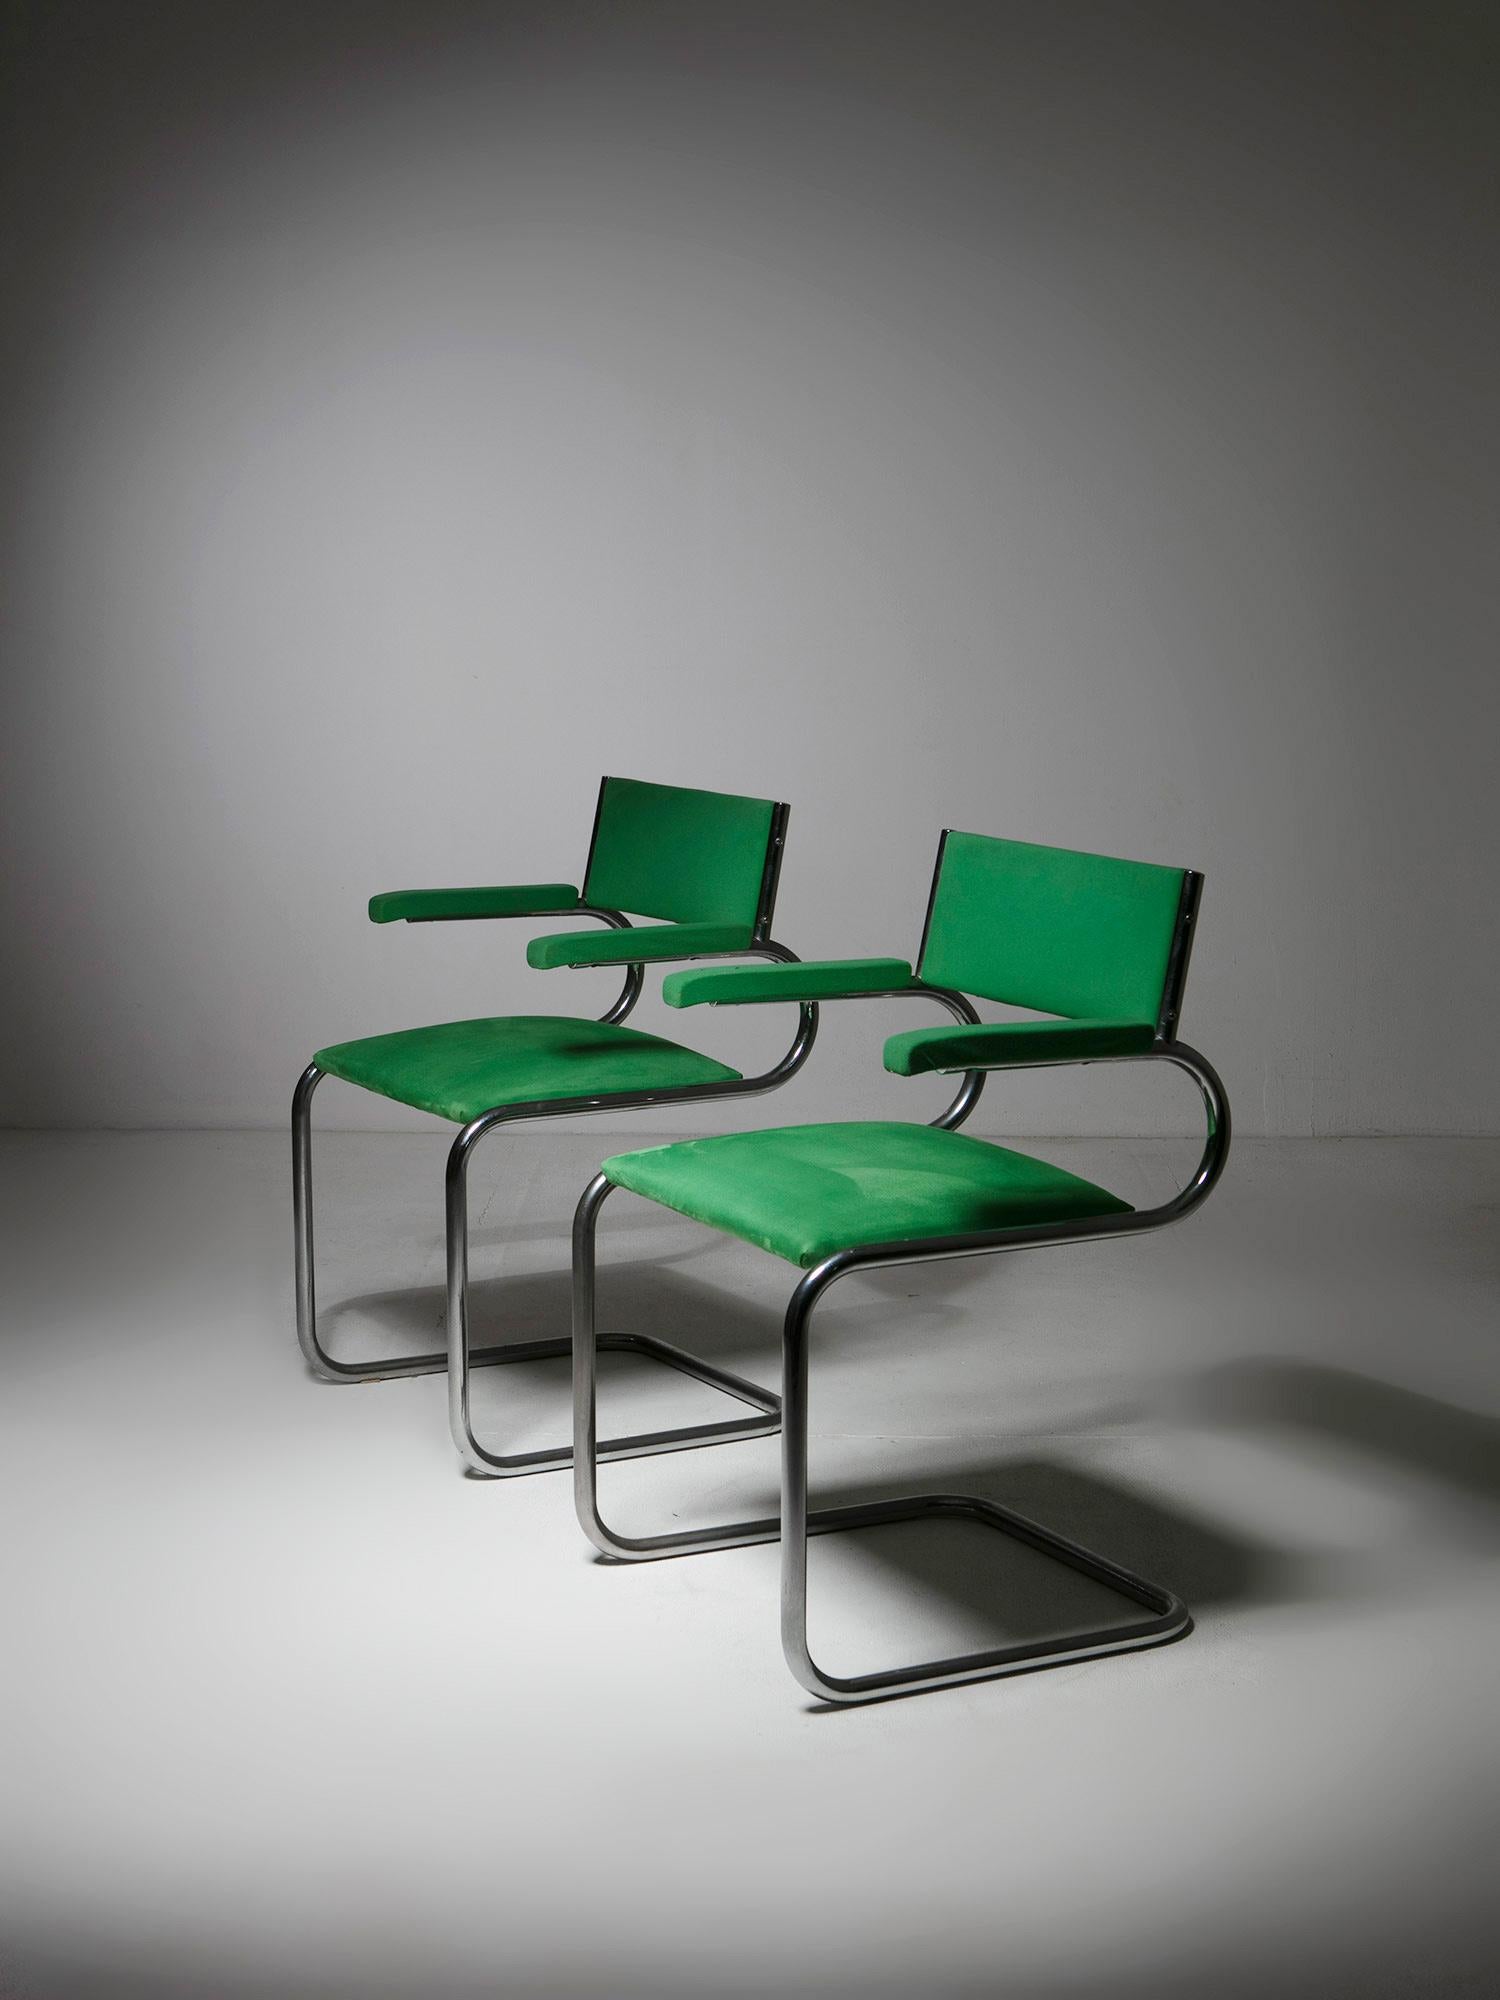 Conjunto de dos sillones de Luigi Saccardo para Arrmet.
Sillas recubiertas de terciopelo verde con una icónica forma tubular.